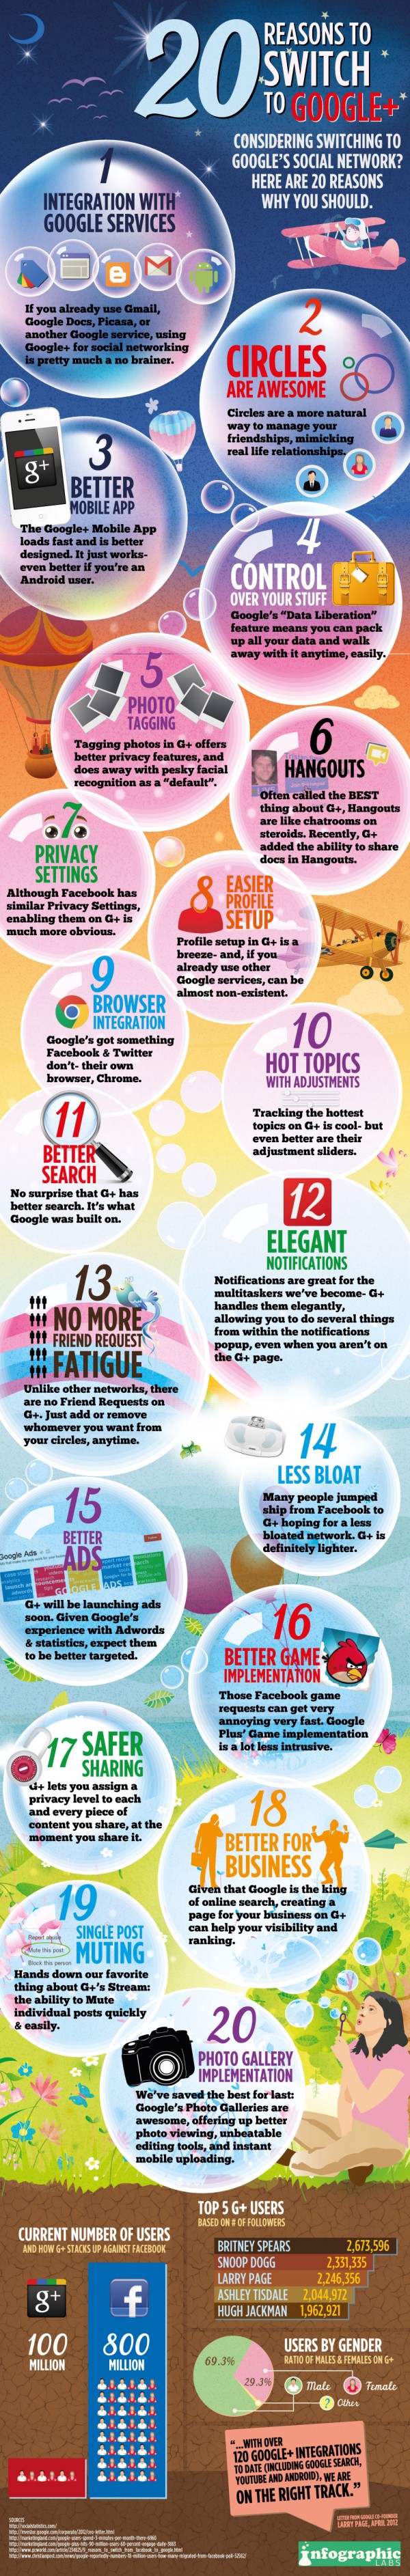 20 excelentes razones para cambiarse a Google plus.[#Infografía]